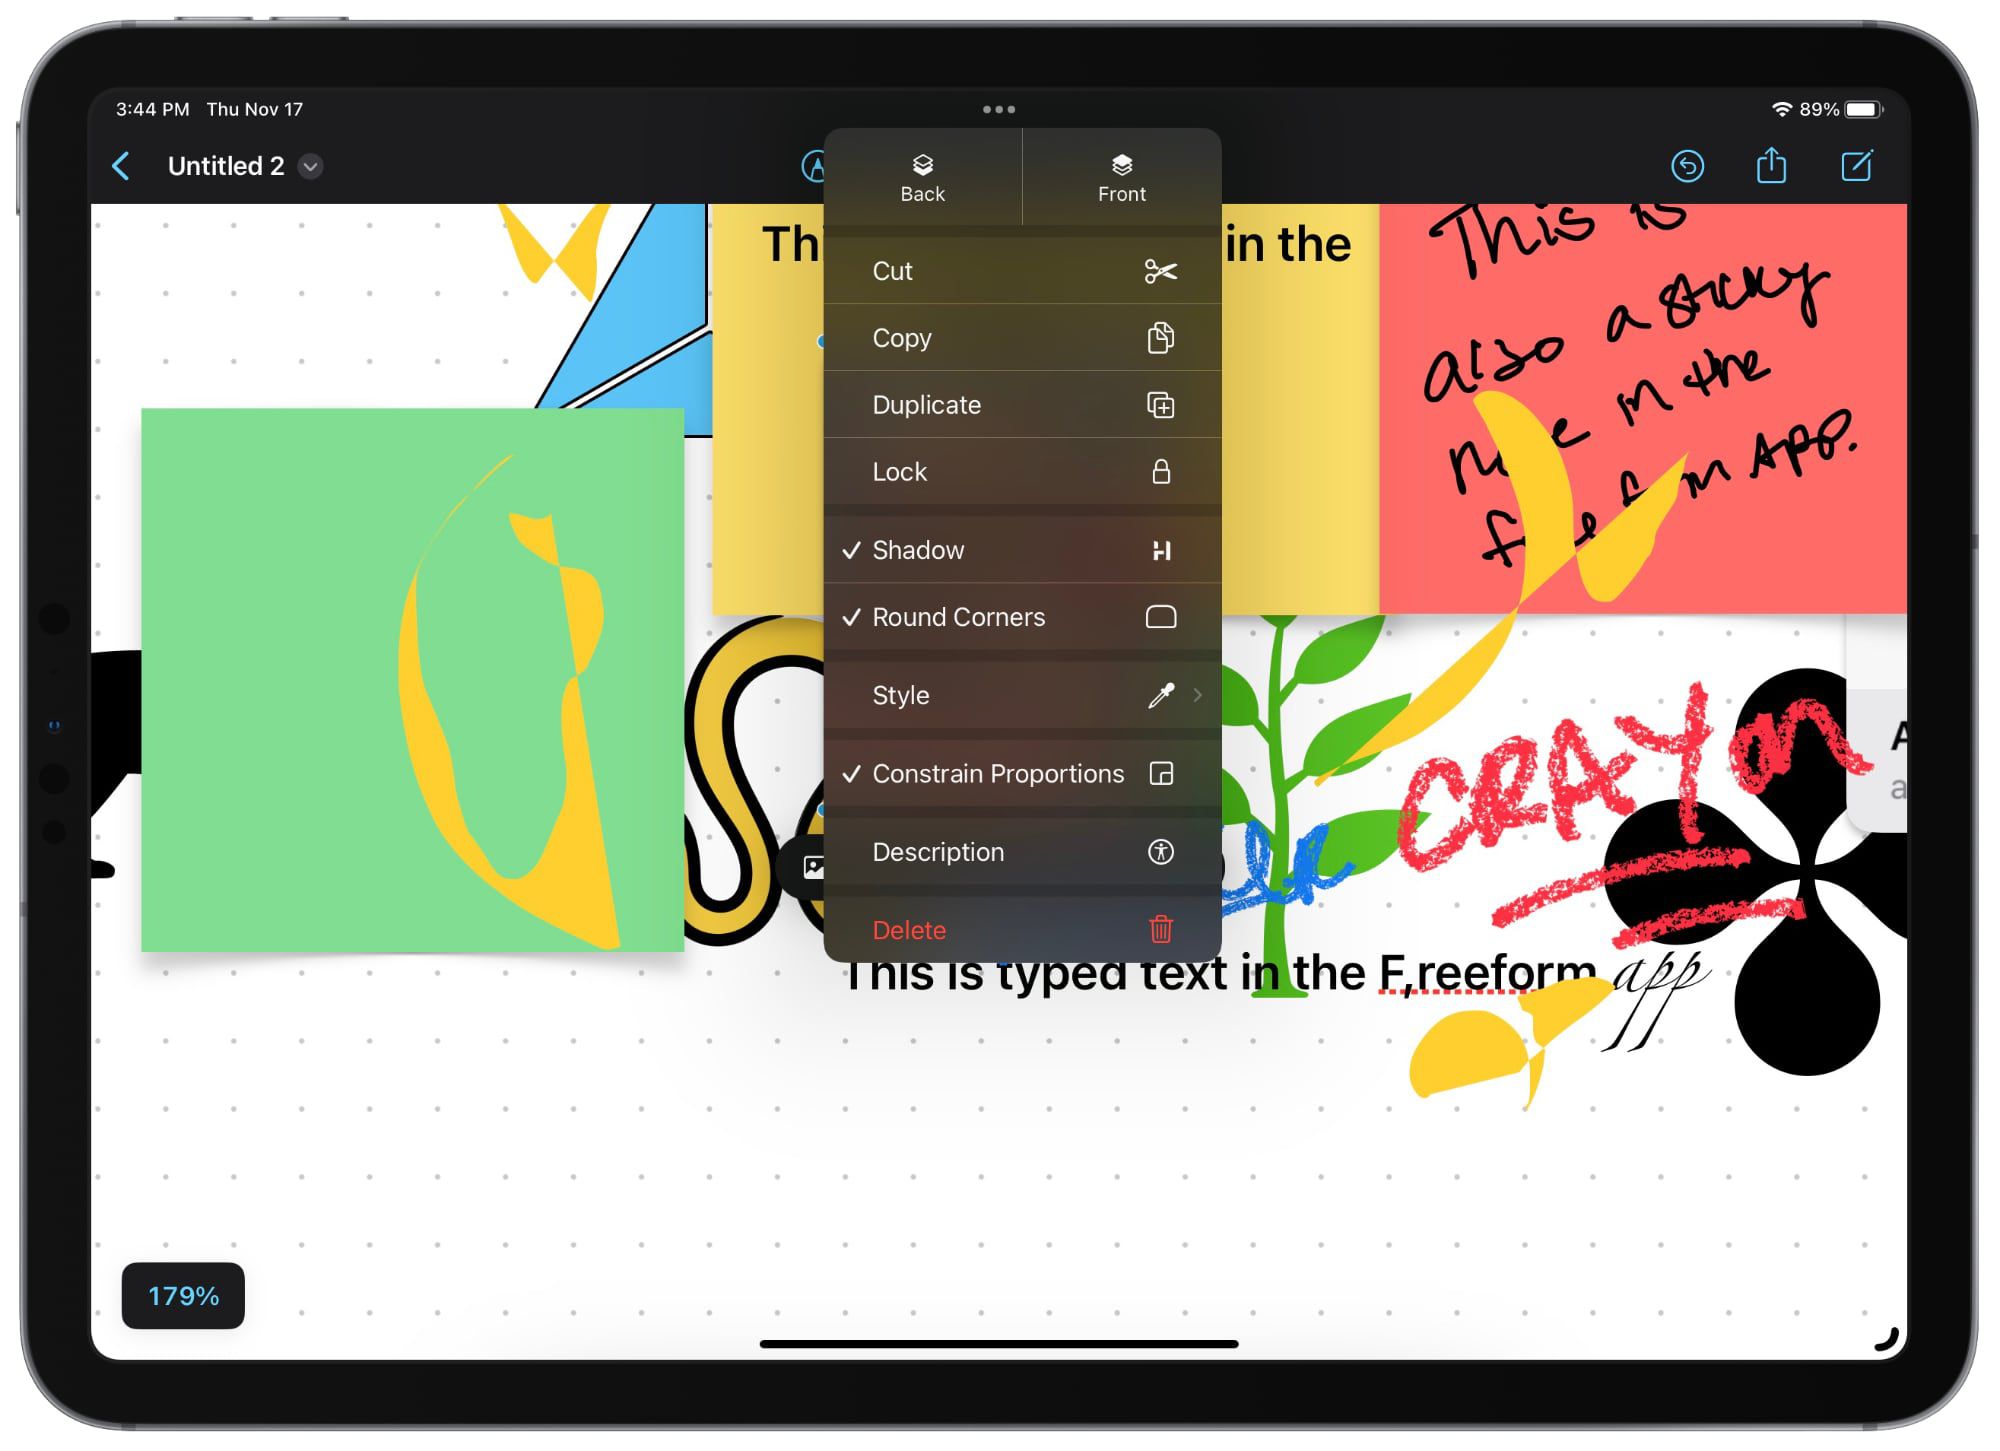 10 thứ bạn có thể làm với ứng dụng Freeform mới trên iOS và iPadOS 16.2